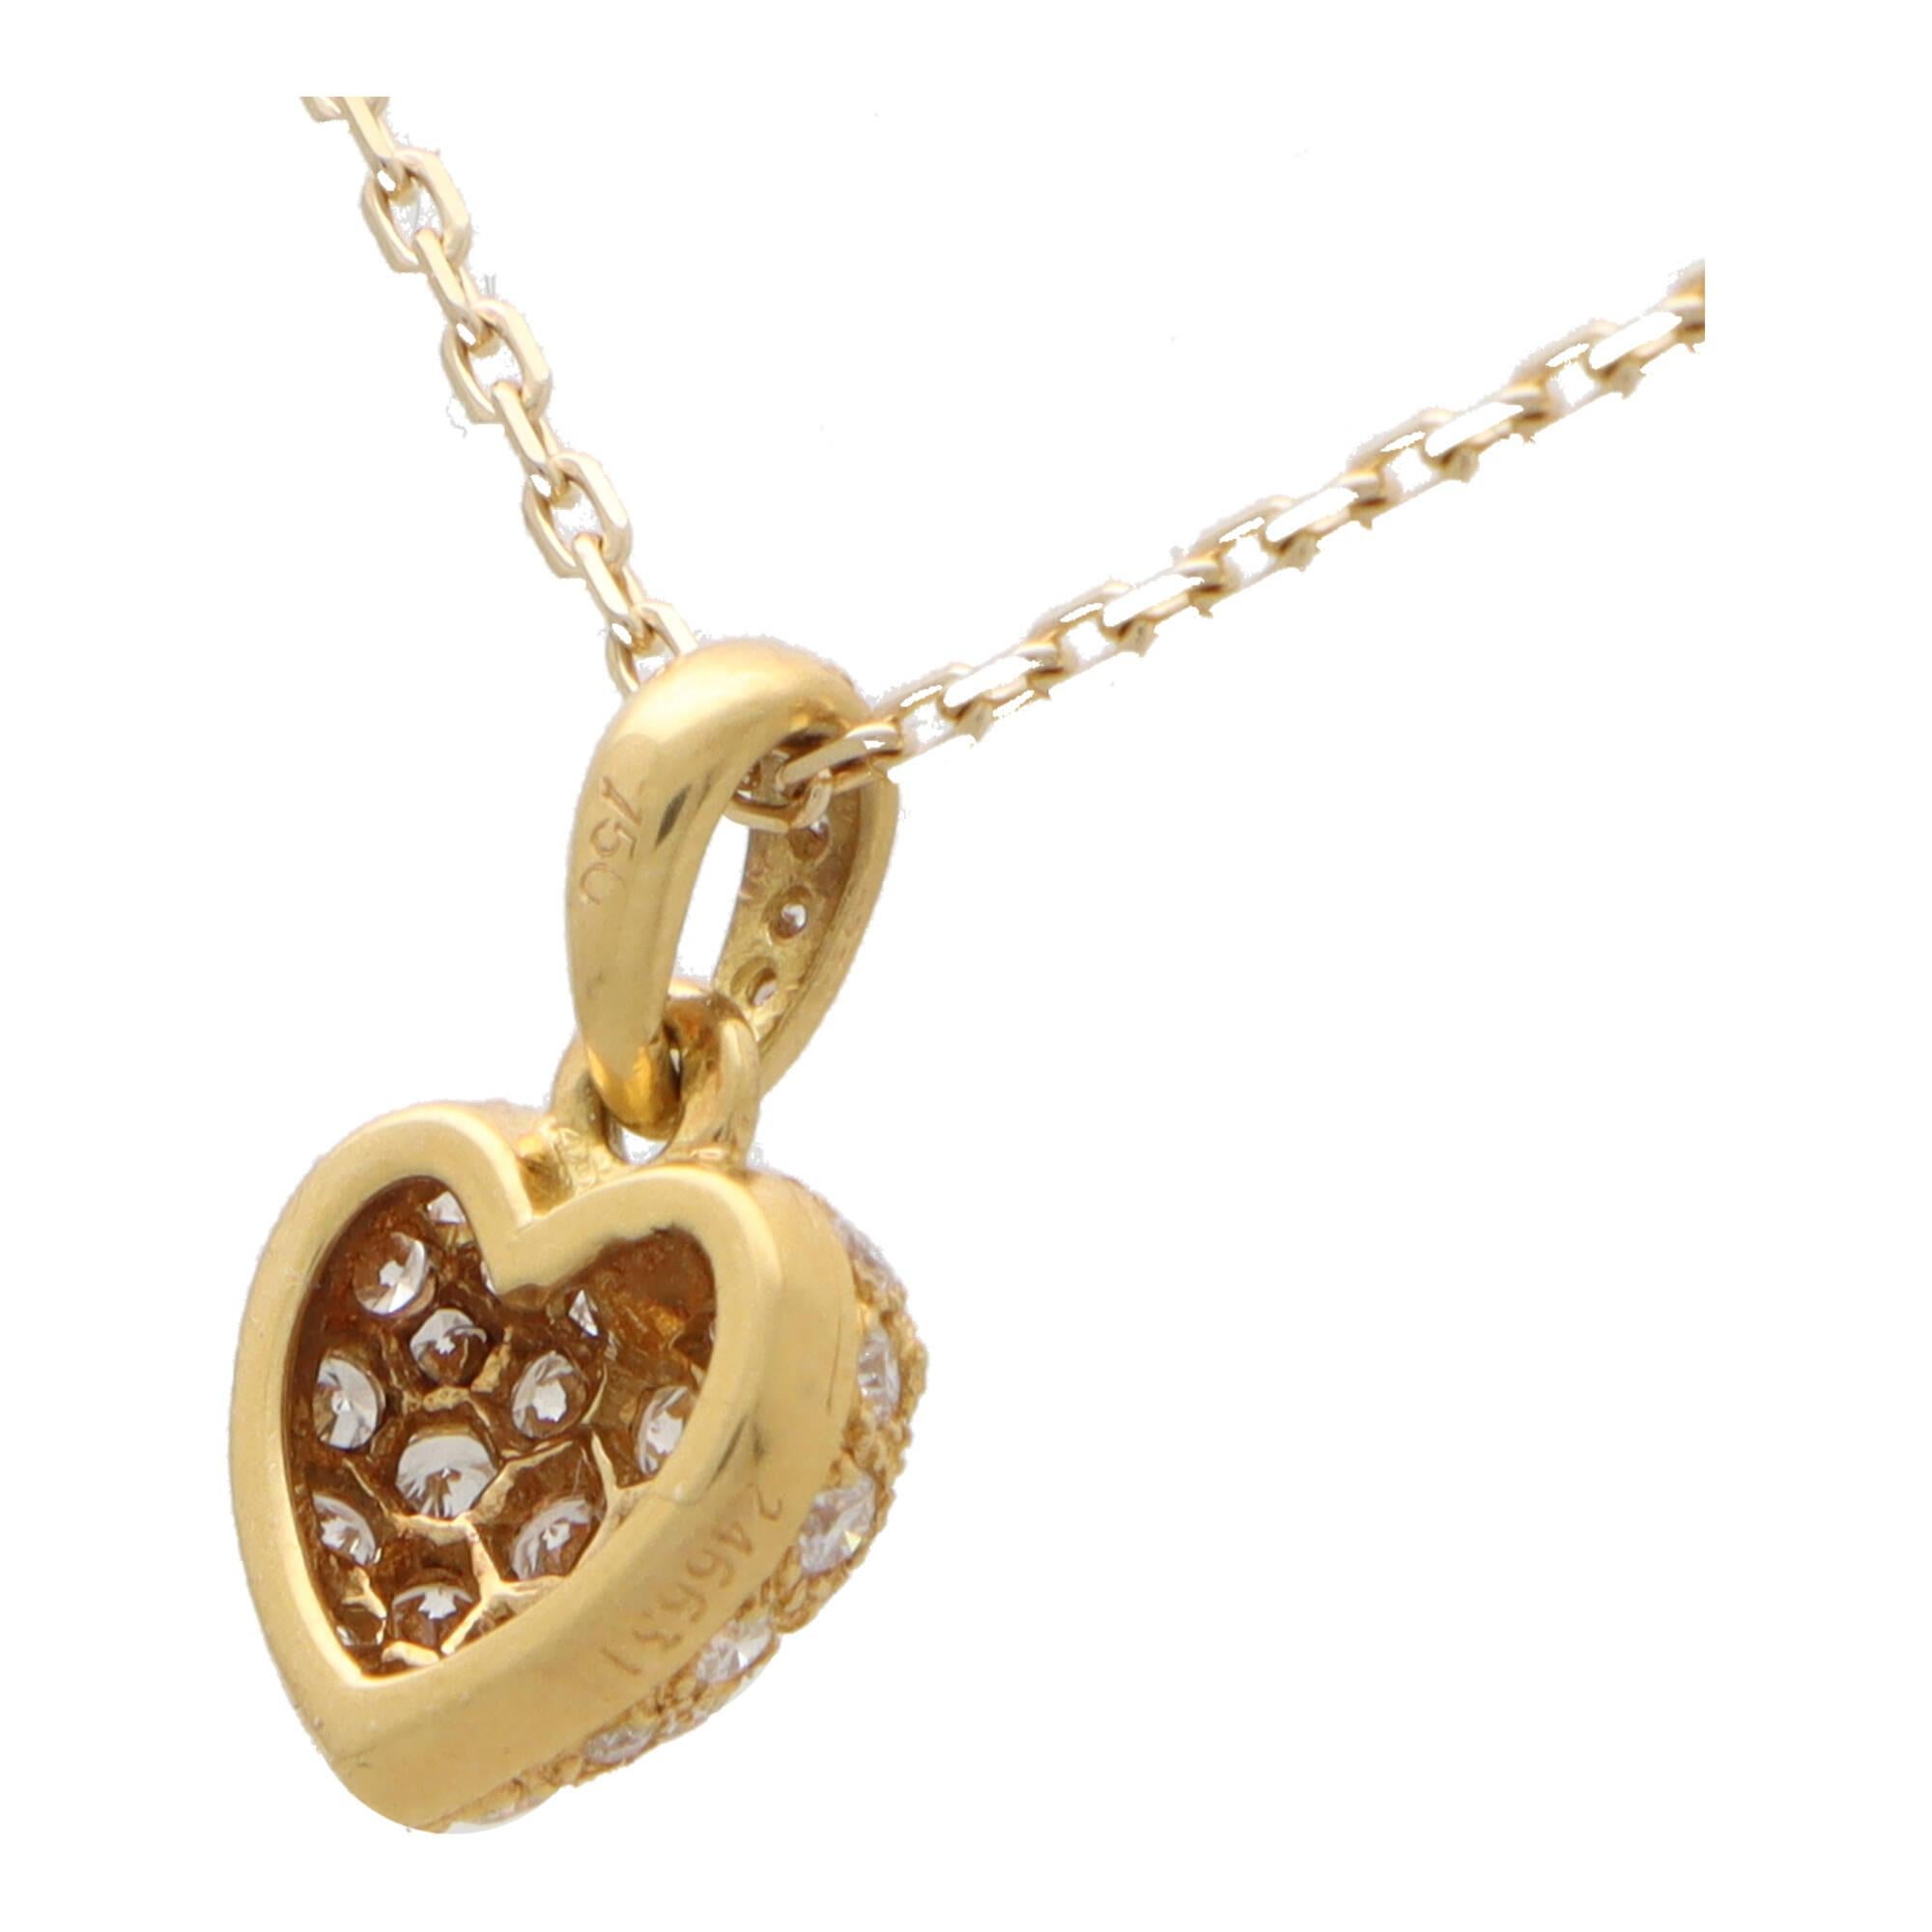 Magnifique collier vintage en or jaune 18 carats avec pendentif en forme de cœur serti de diamants de Cartier.

Issu d'une collection Cartier des années 1990 aujourd'hui abandonnée, ce pendentif représente un motif classique en forme de cœur. Le